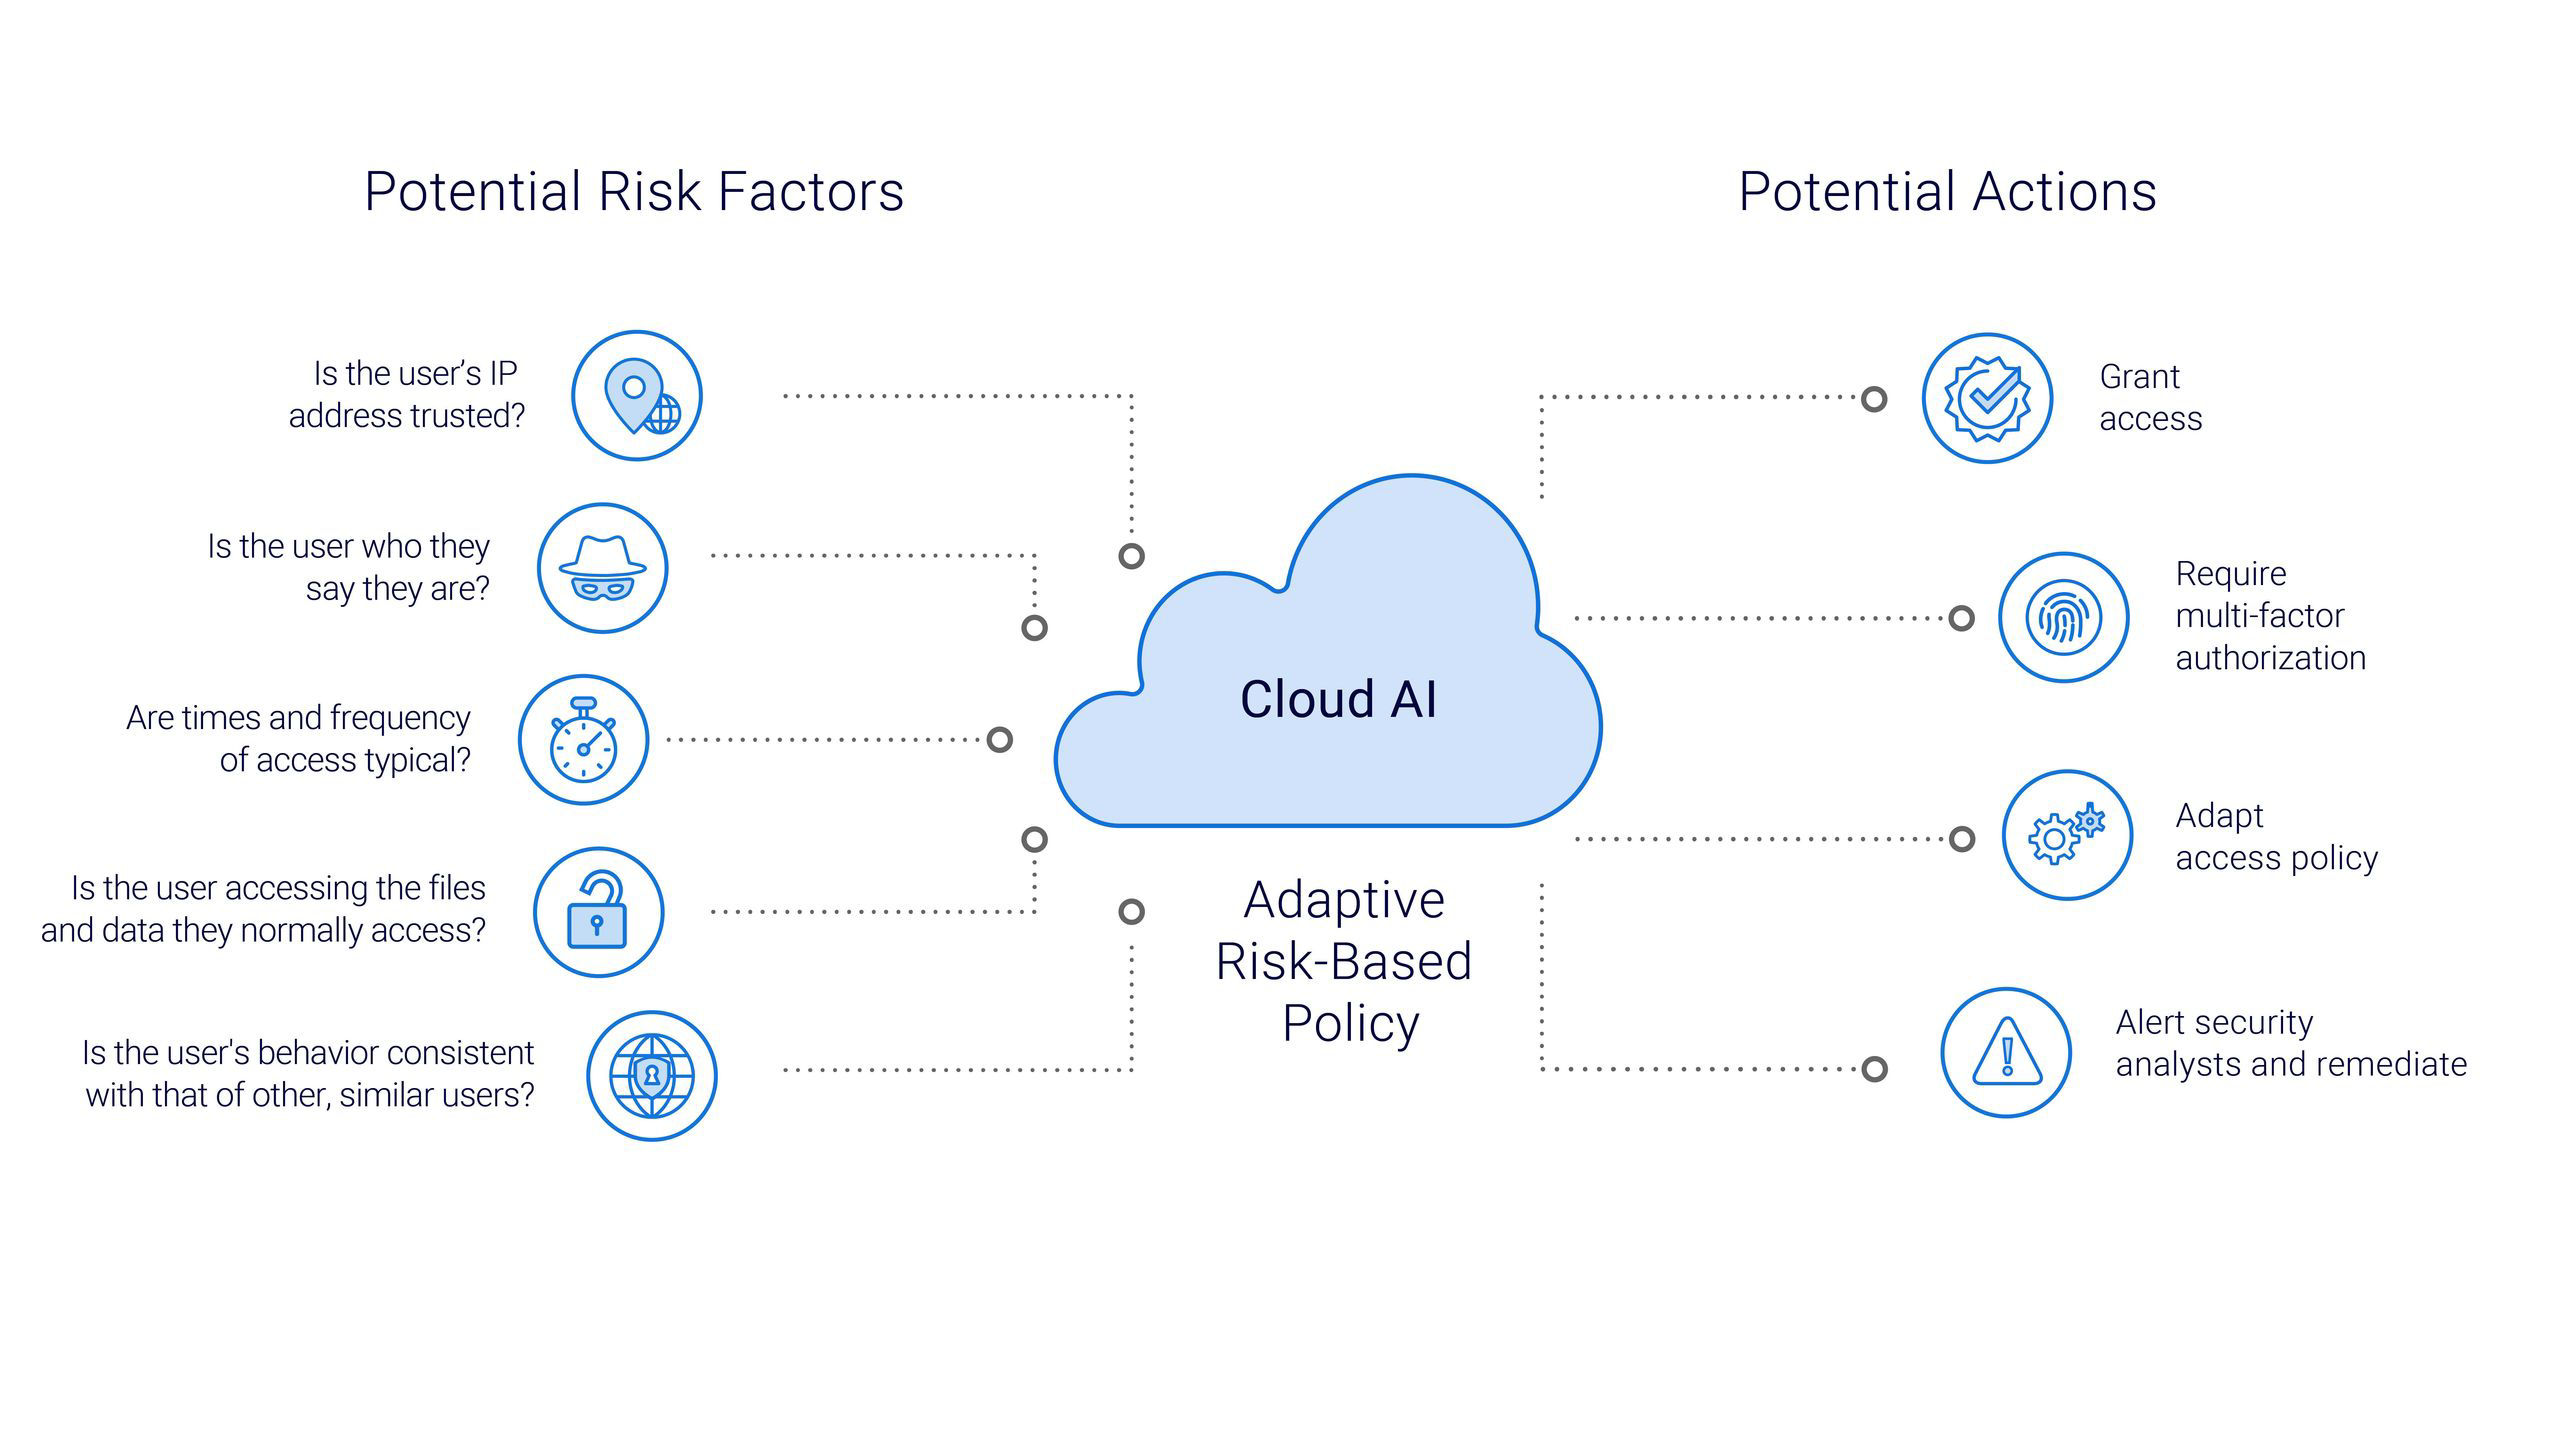 ¿Cómo usamos Cloud-AI para evaluar el riesgo en la red?